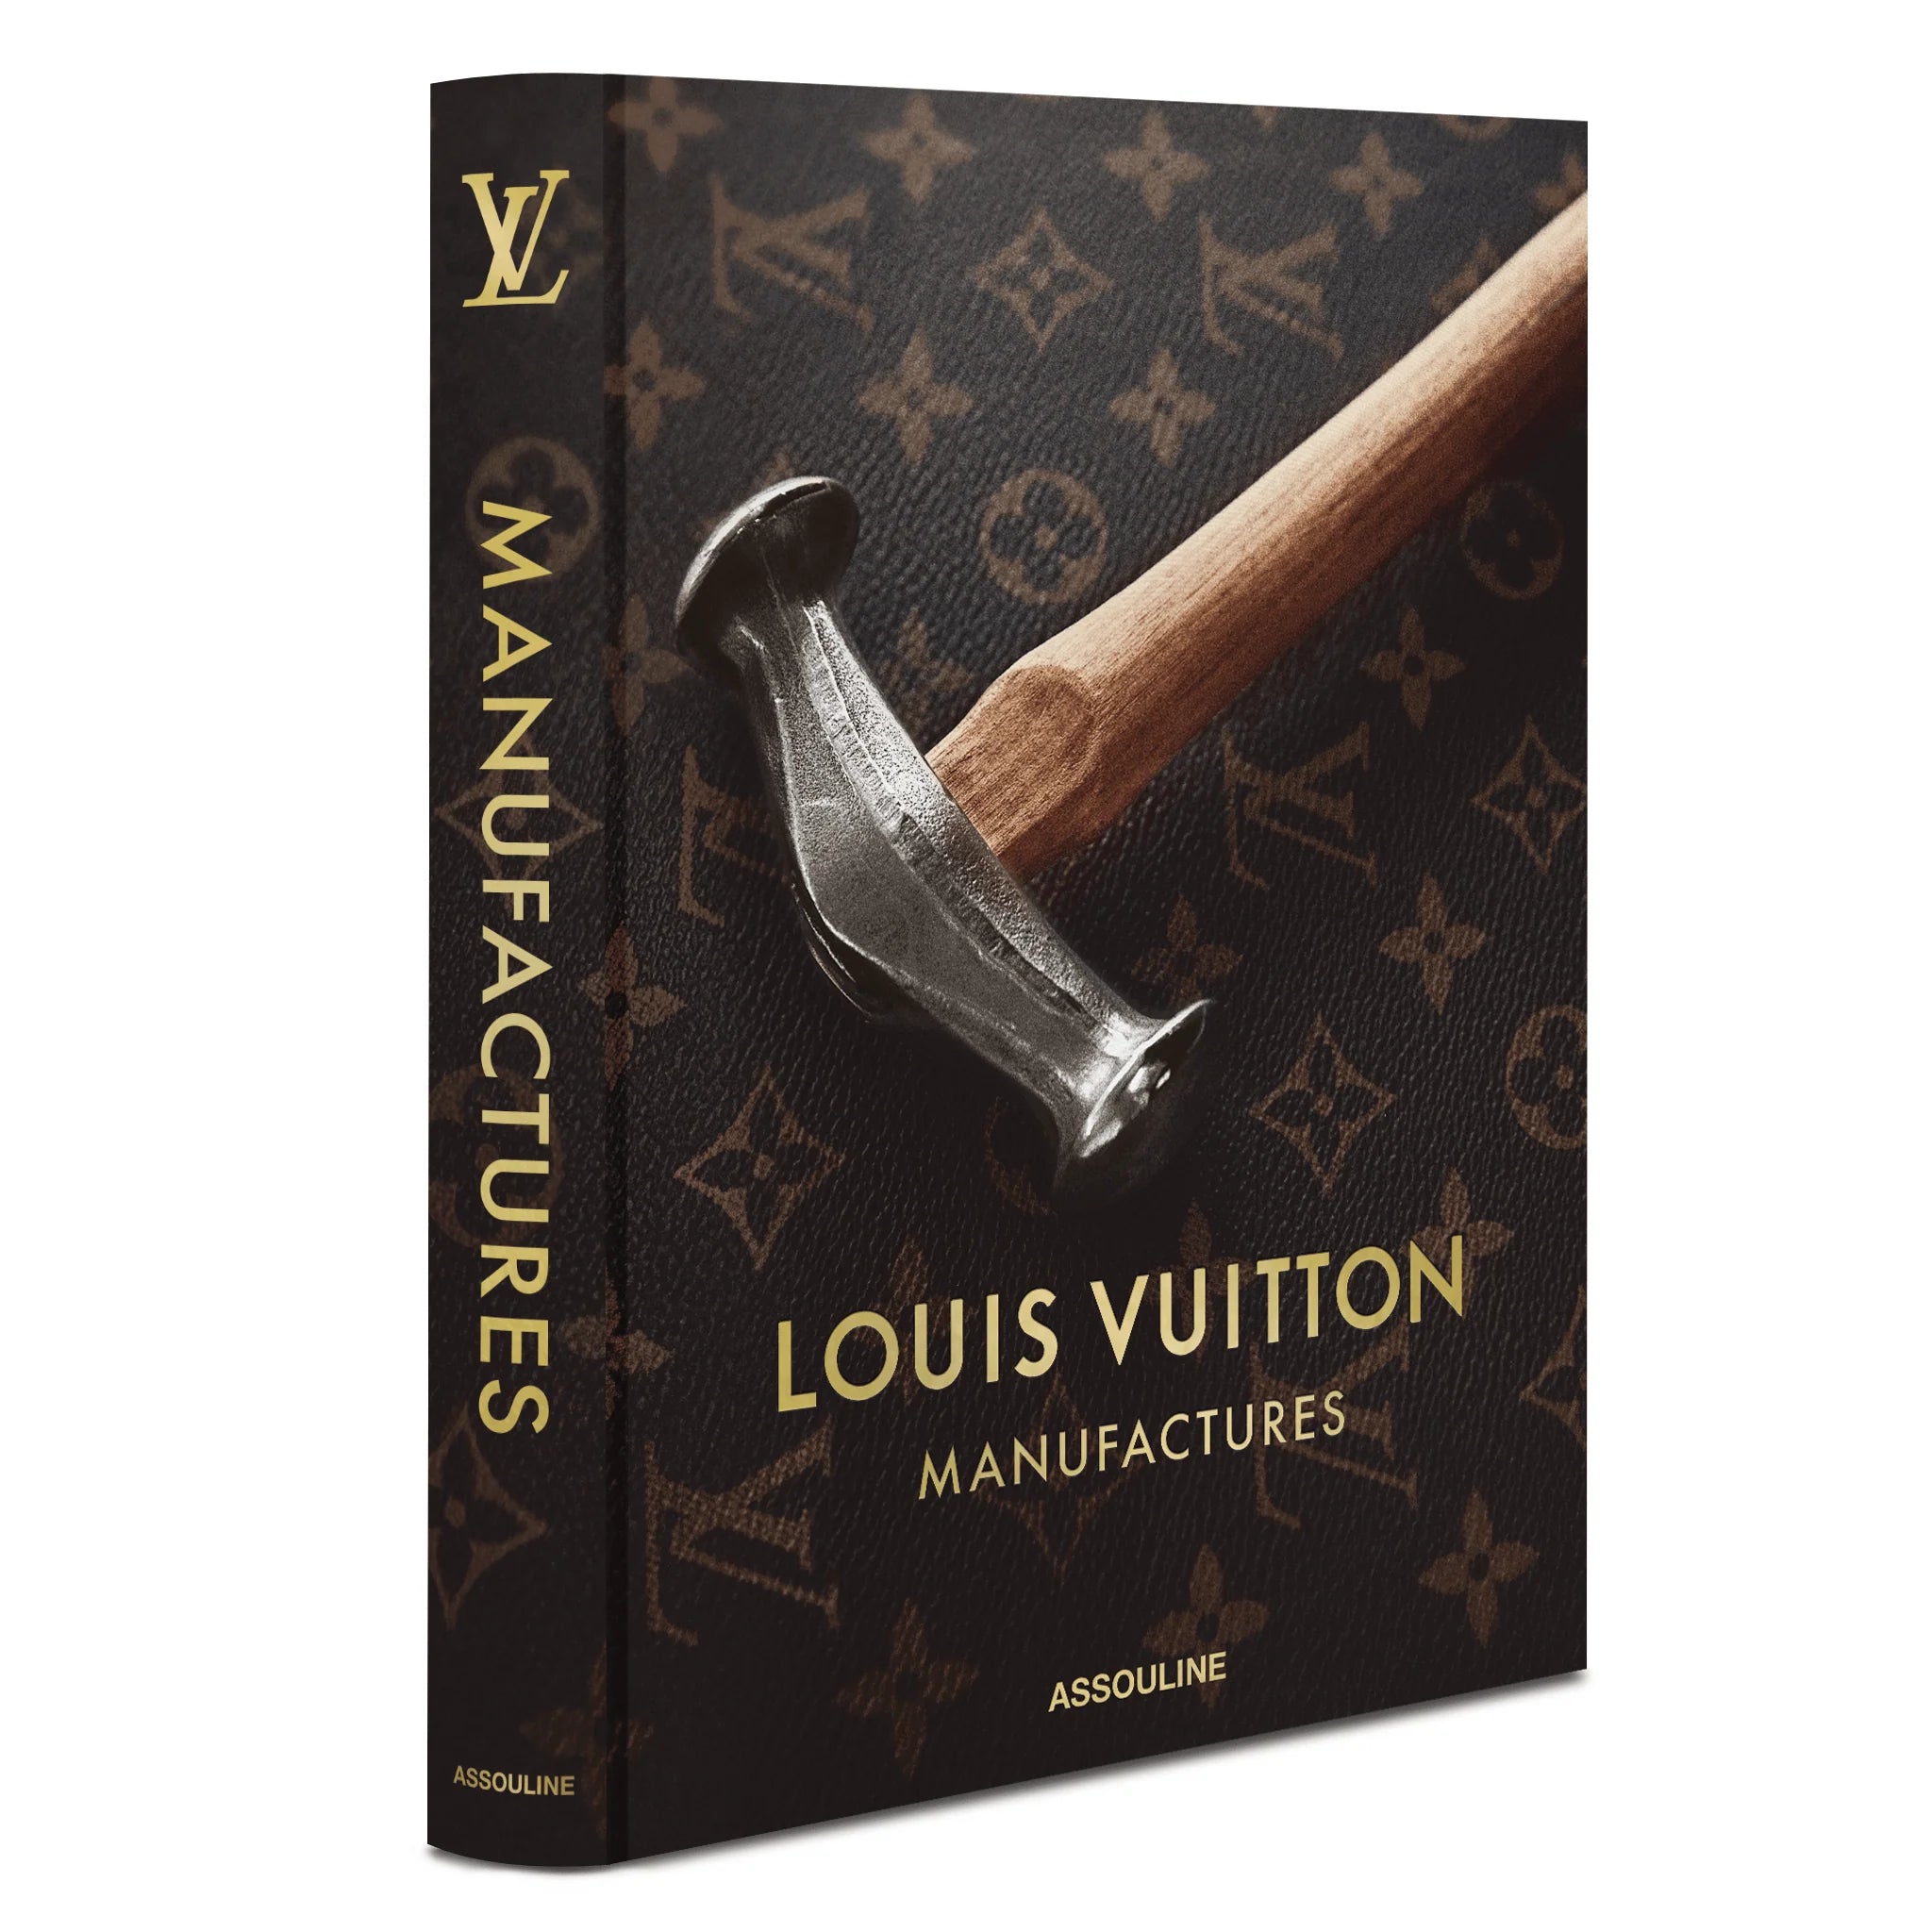 LUIS VUITTON MANUFACTURES, de la colección de libros decorativos de moda de la editorial Assouline